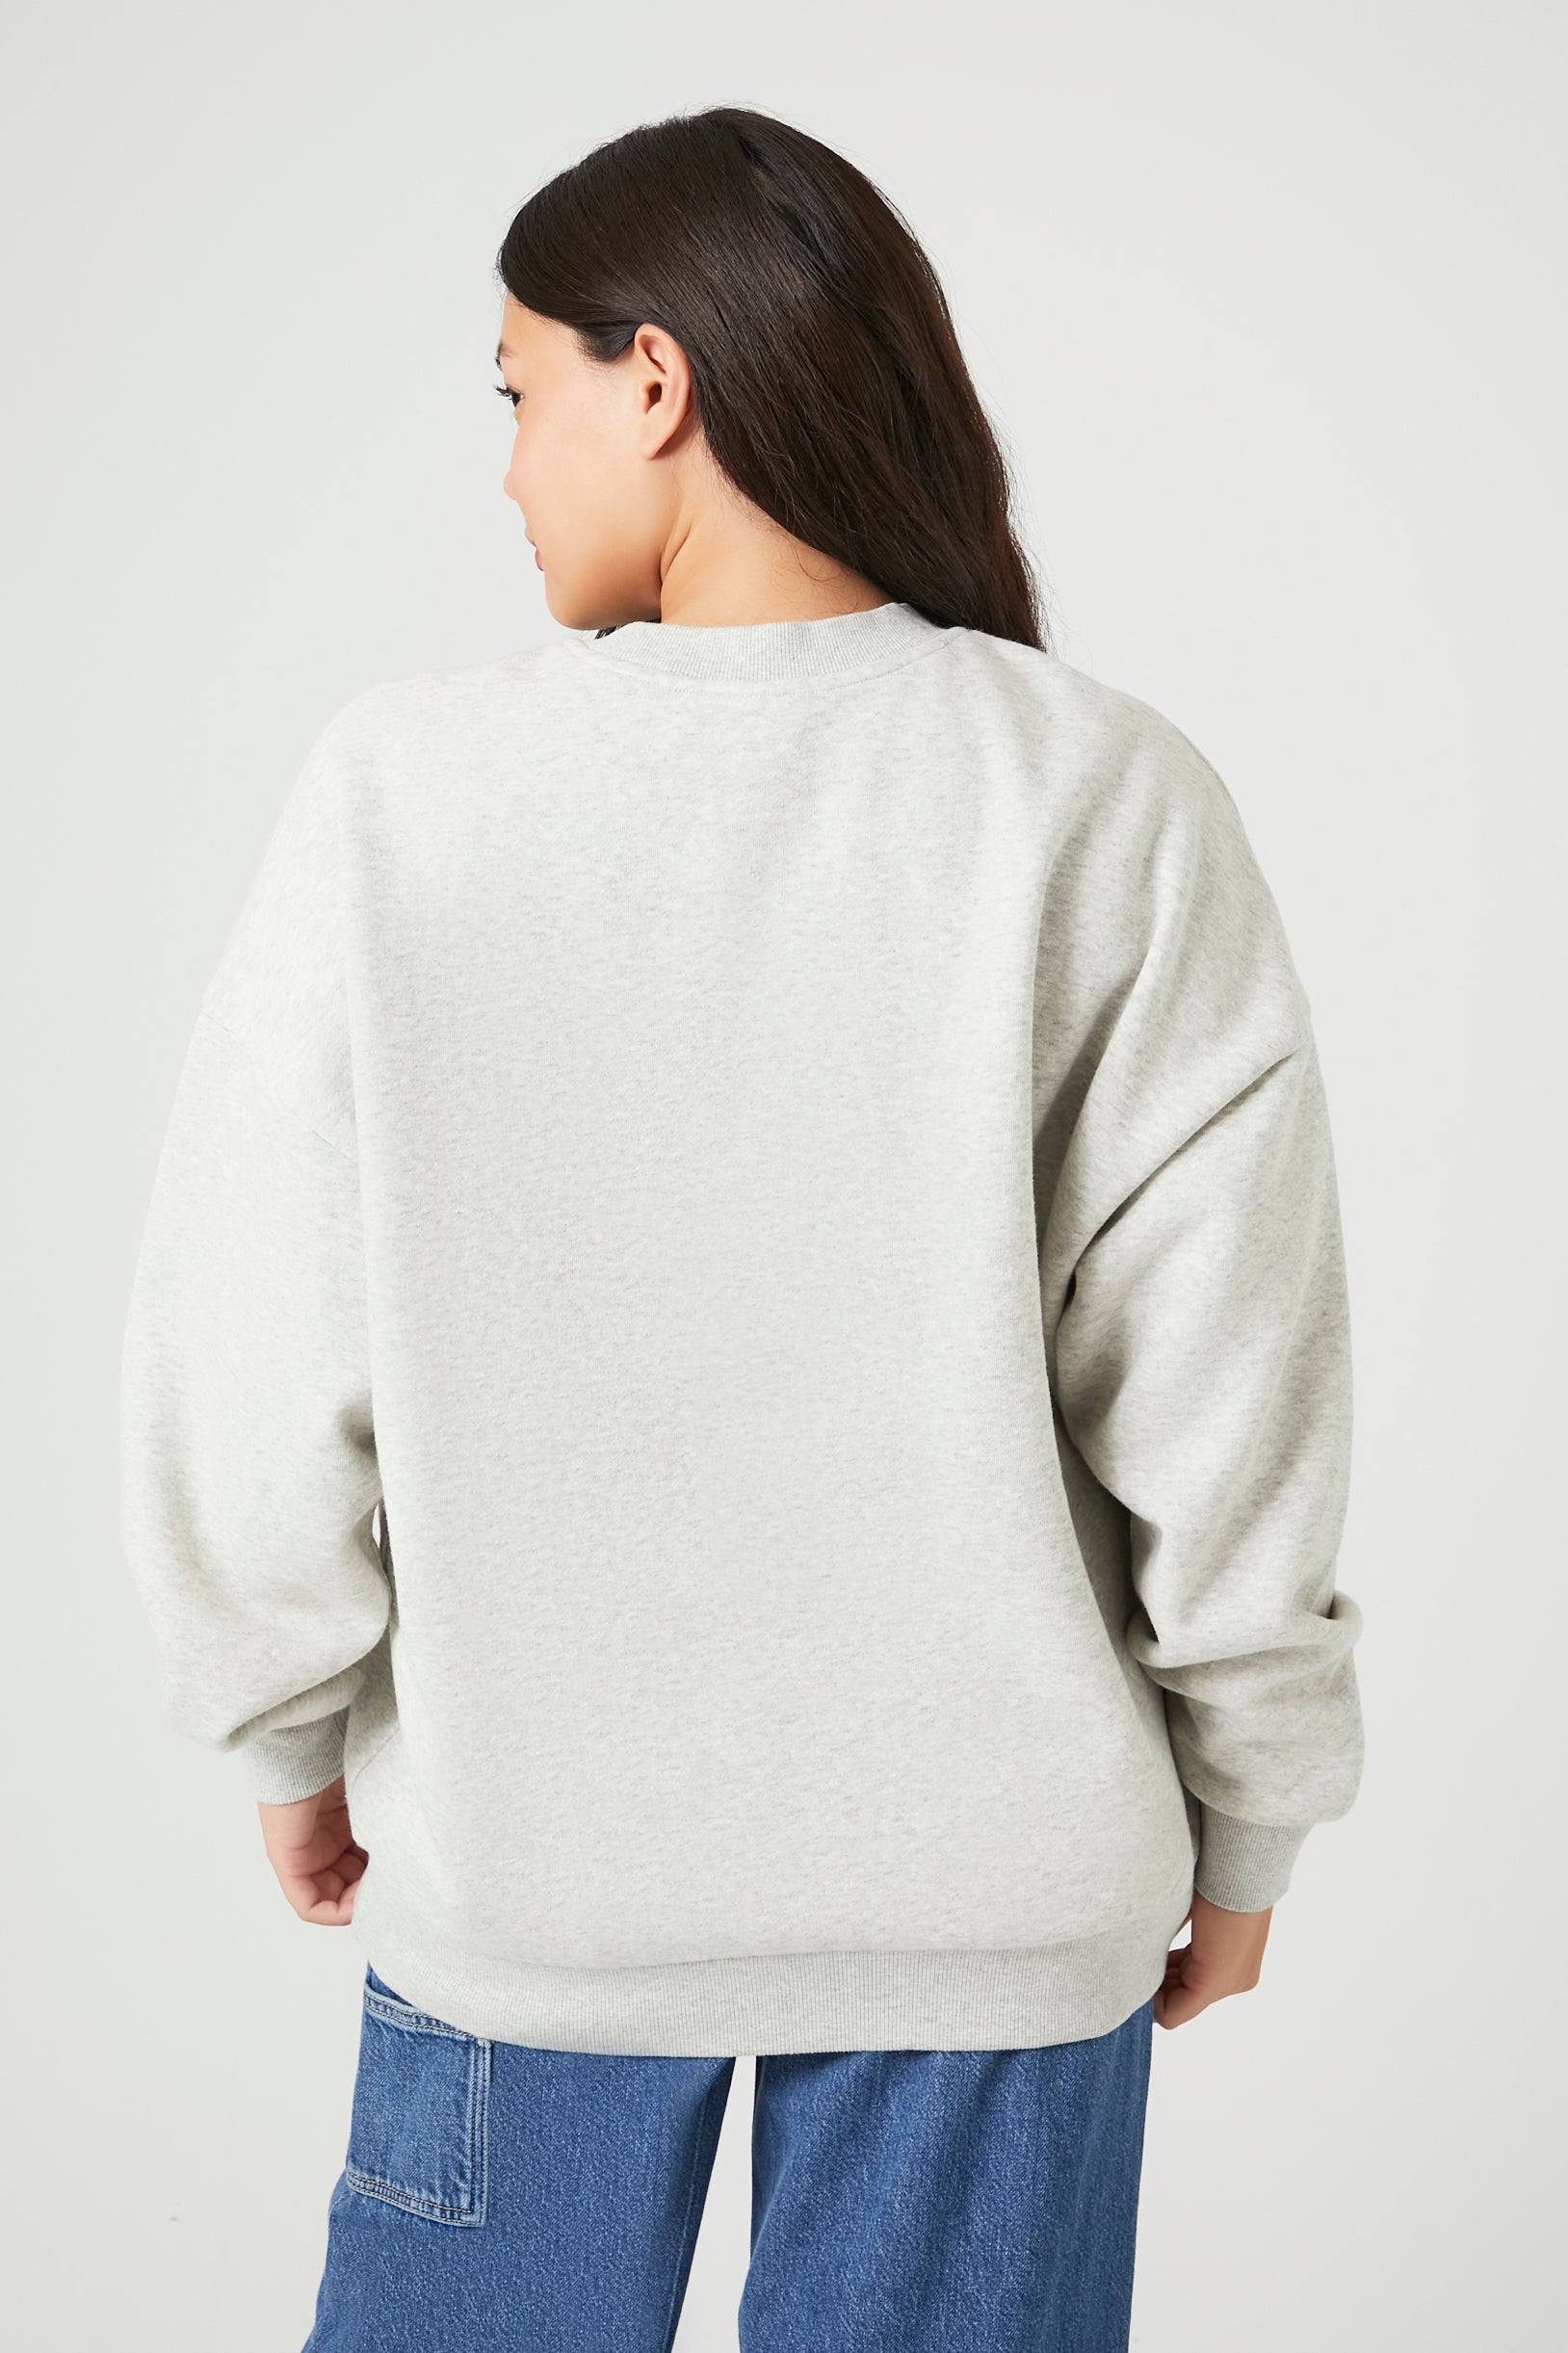 BRKLYN Distressed Graphic Fleece Sweatshirt